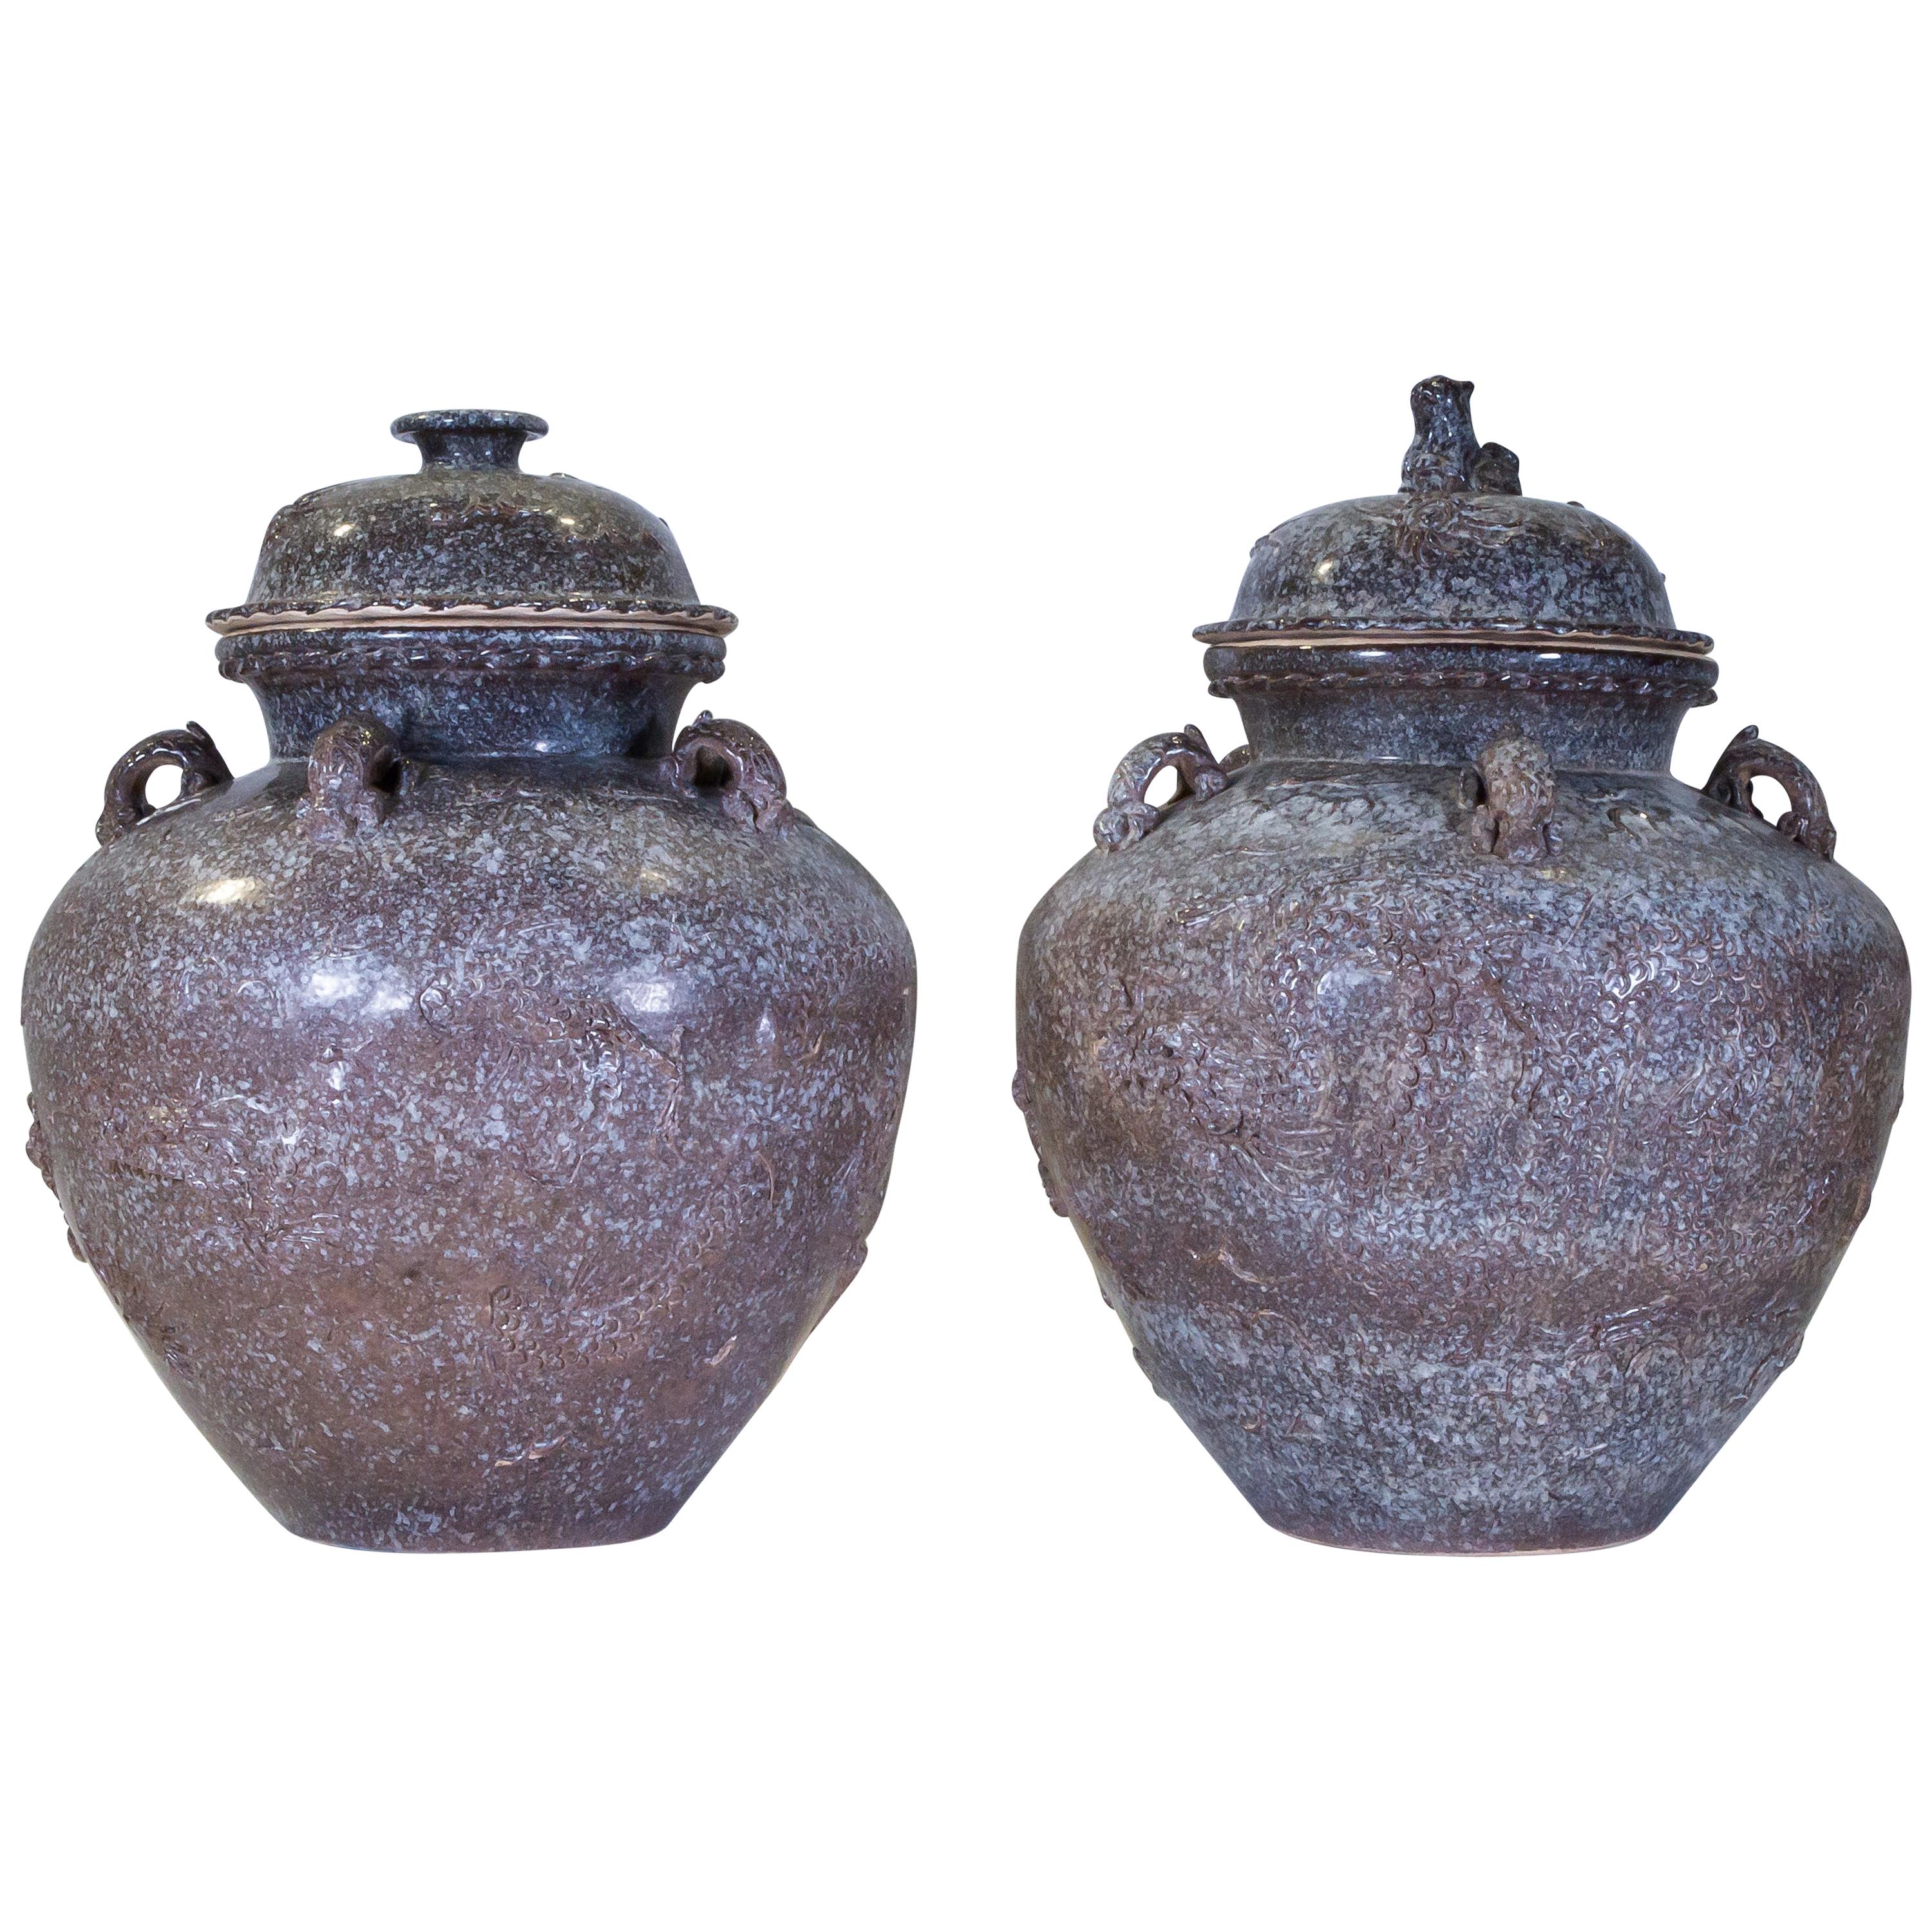 Pr Faux Swedish Porphyry Ceramic Covered Vases w/ Sea Creatures Design in Relief